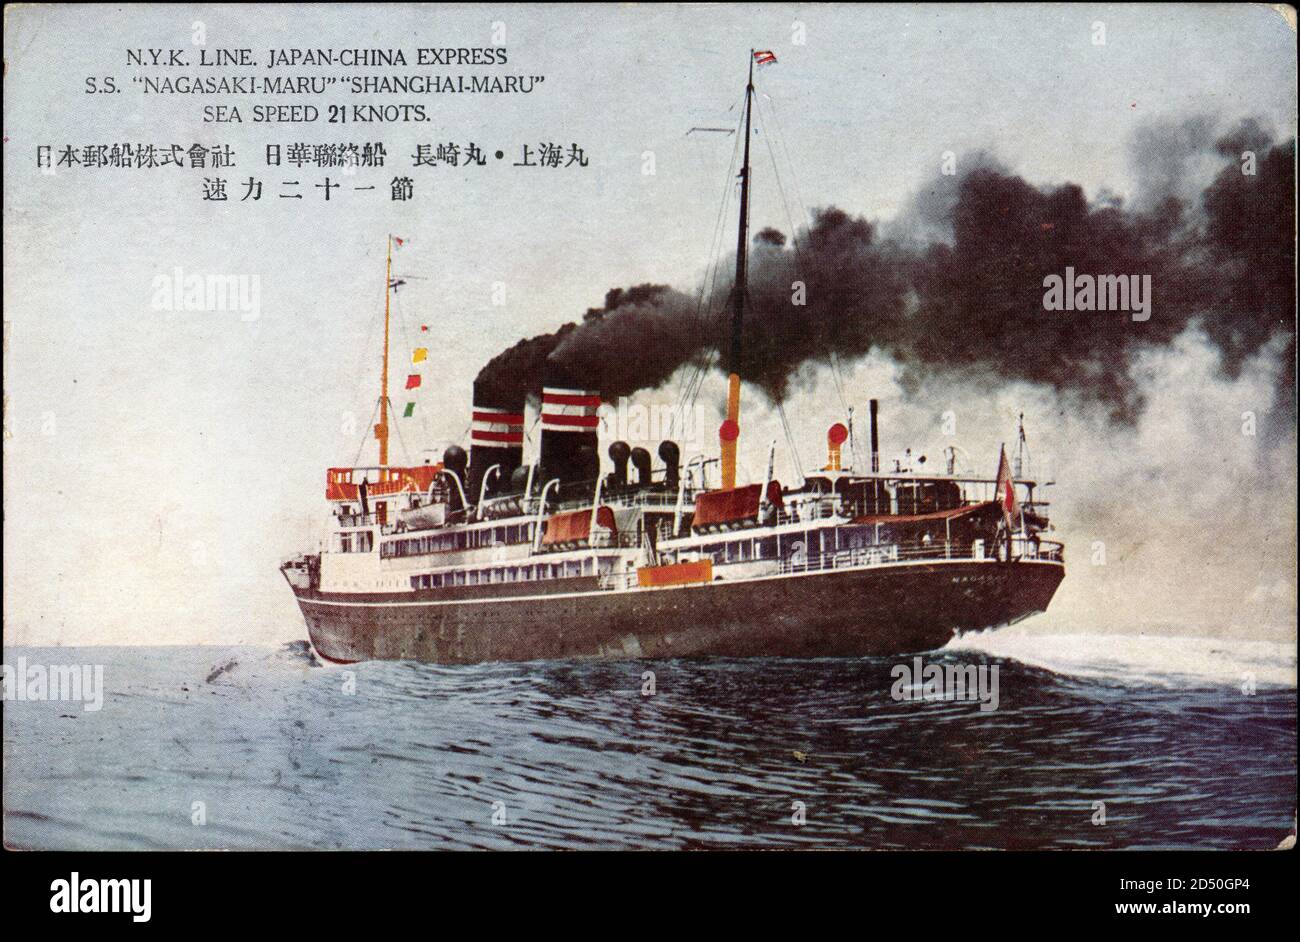 Dampfer Nagasaki Maru der NYK Line auf See | usage worldwide Stock Photo